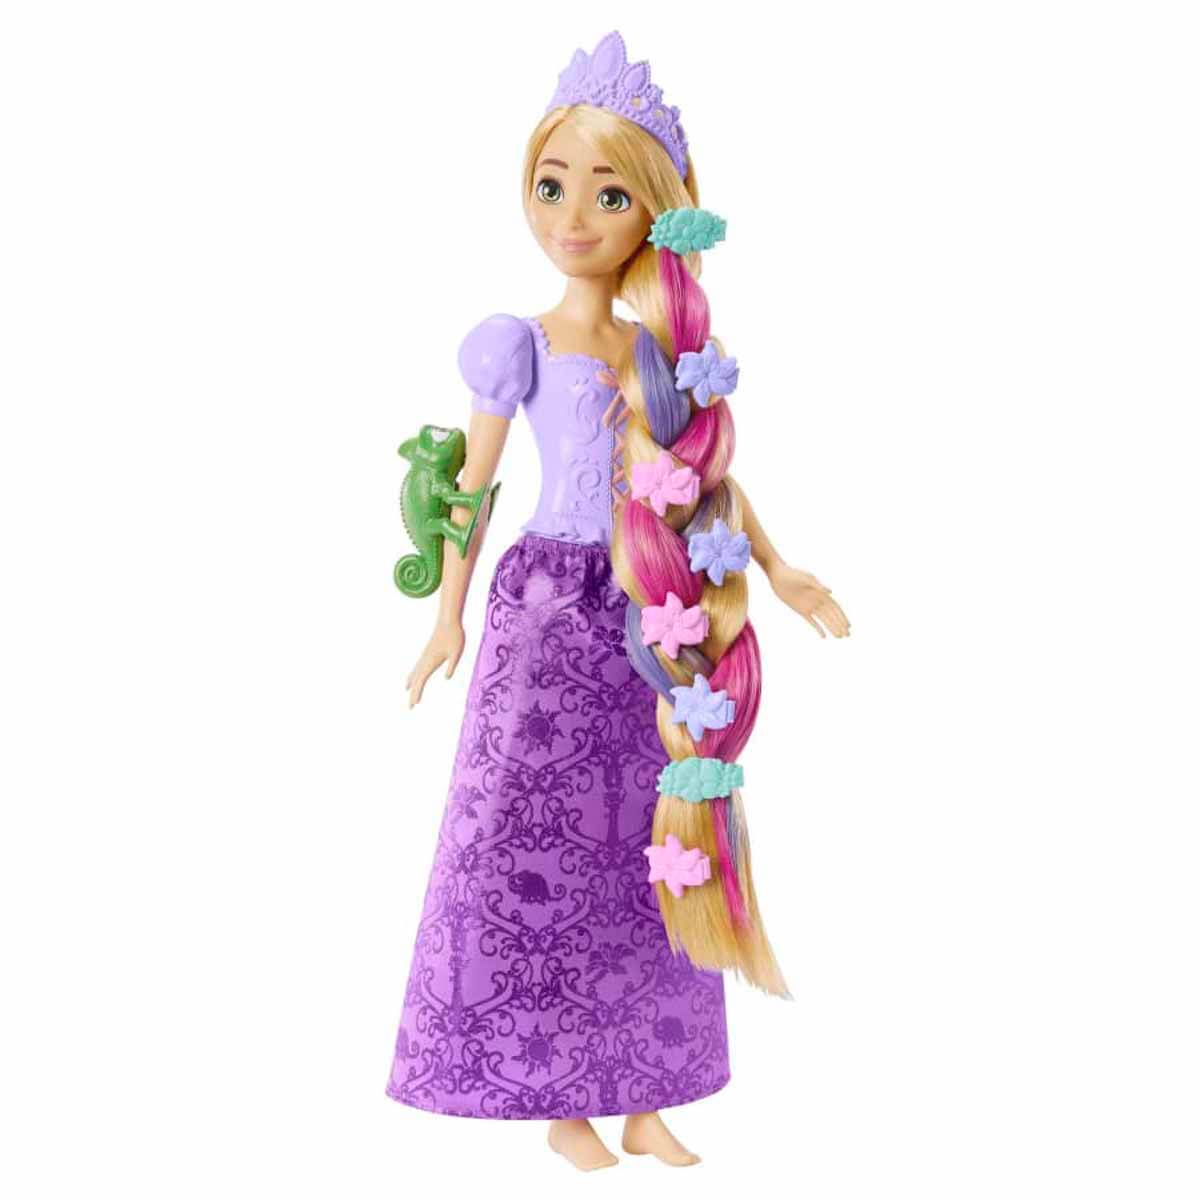 Disney Prenses Renk Değiştiren Sihirli Saçlı Rapunzel HLW18